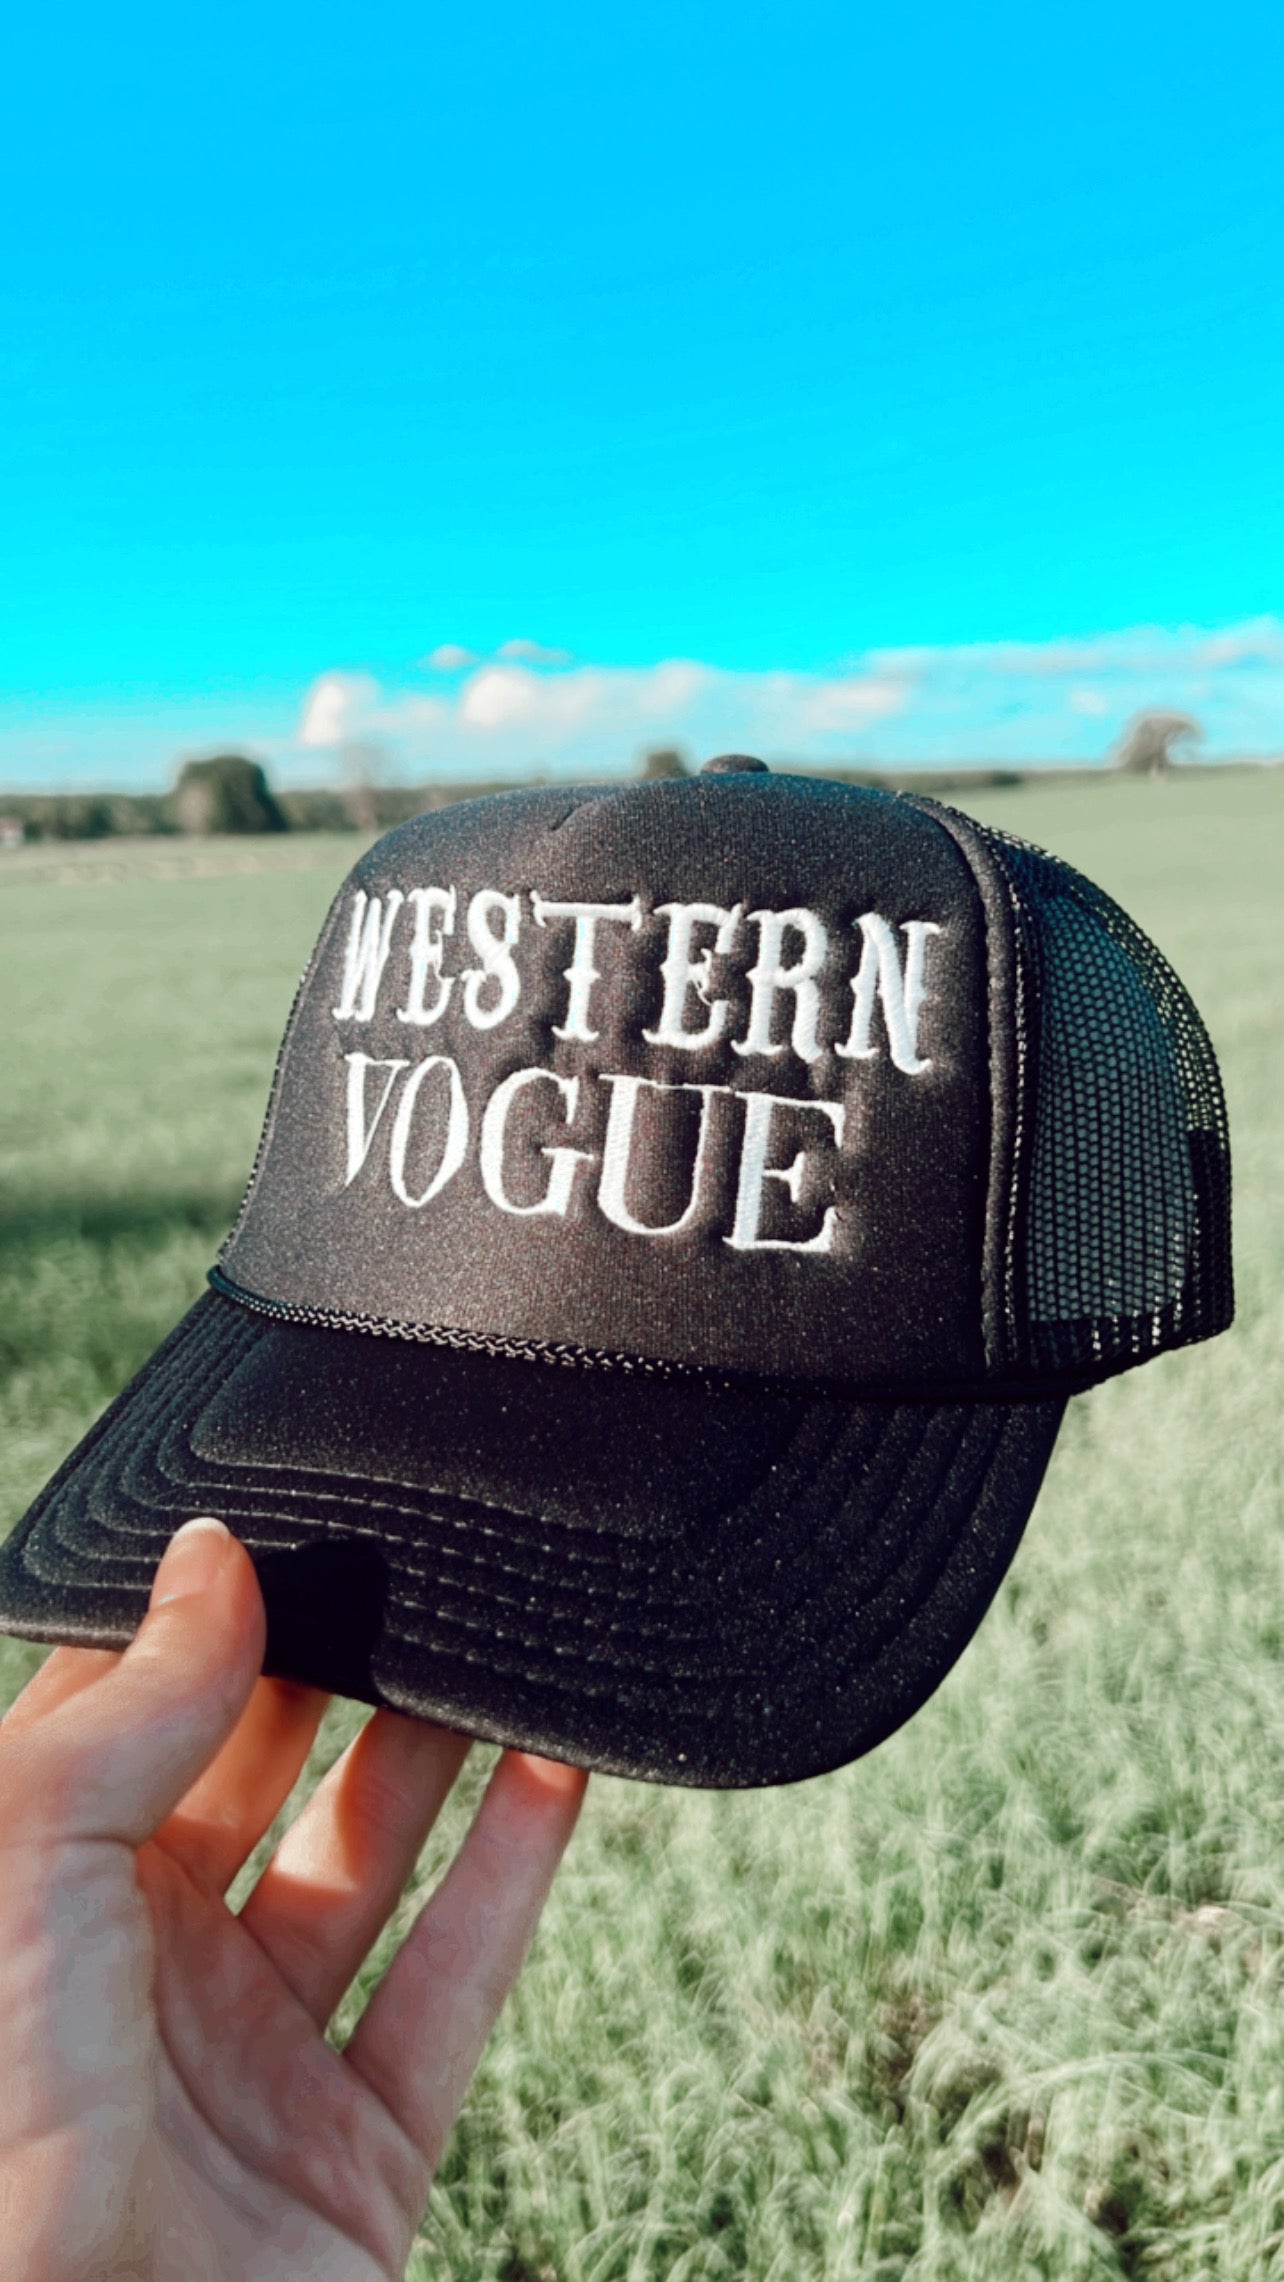 The Western Vogue Trucker Hat